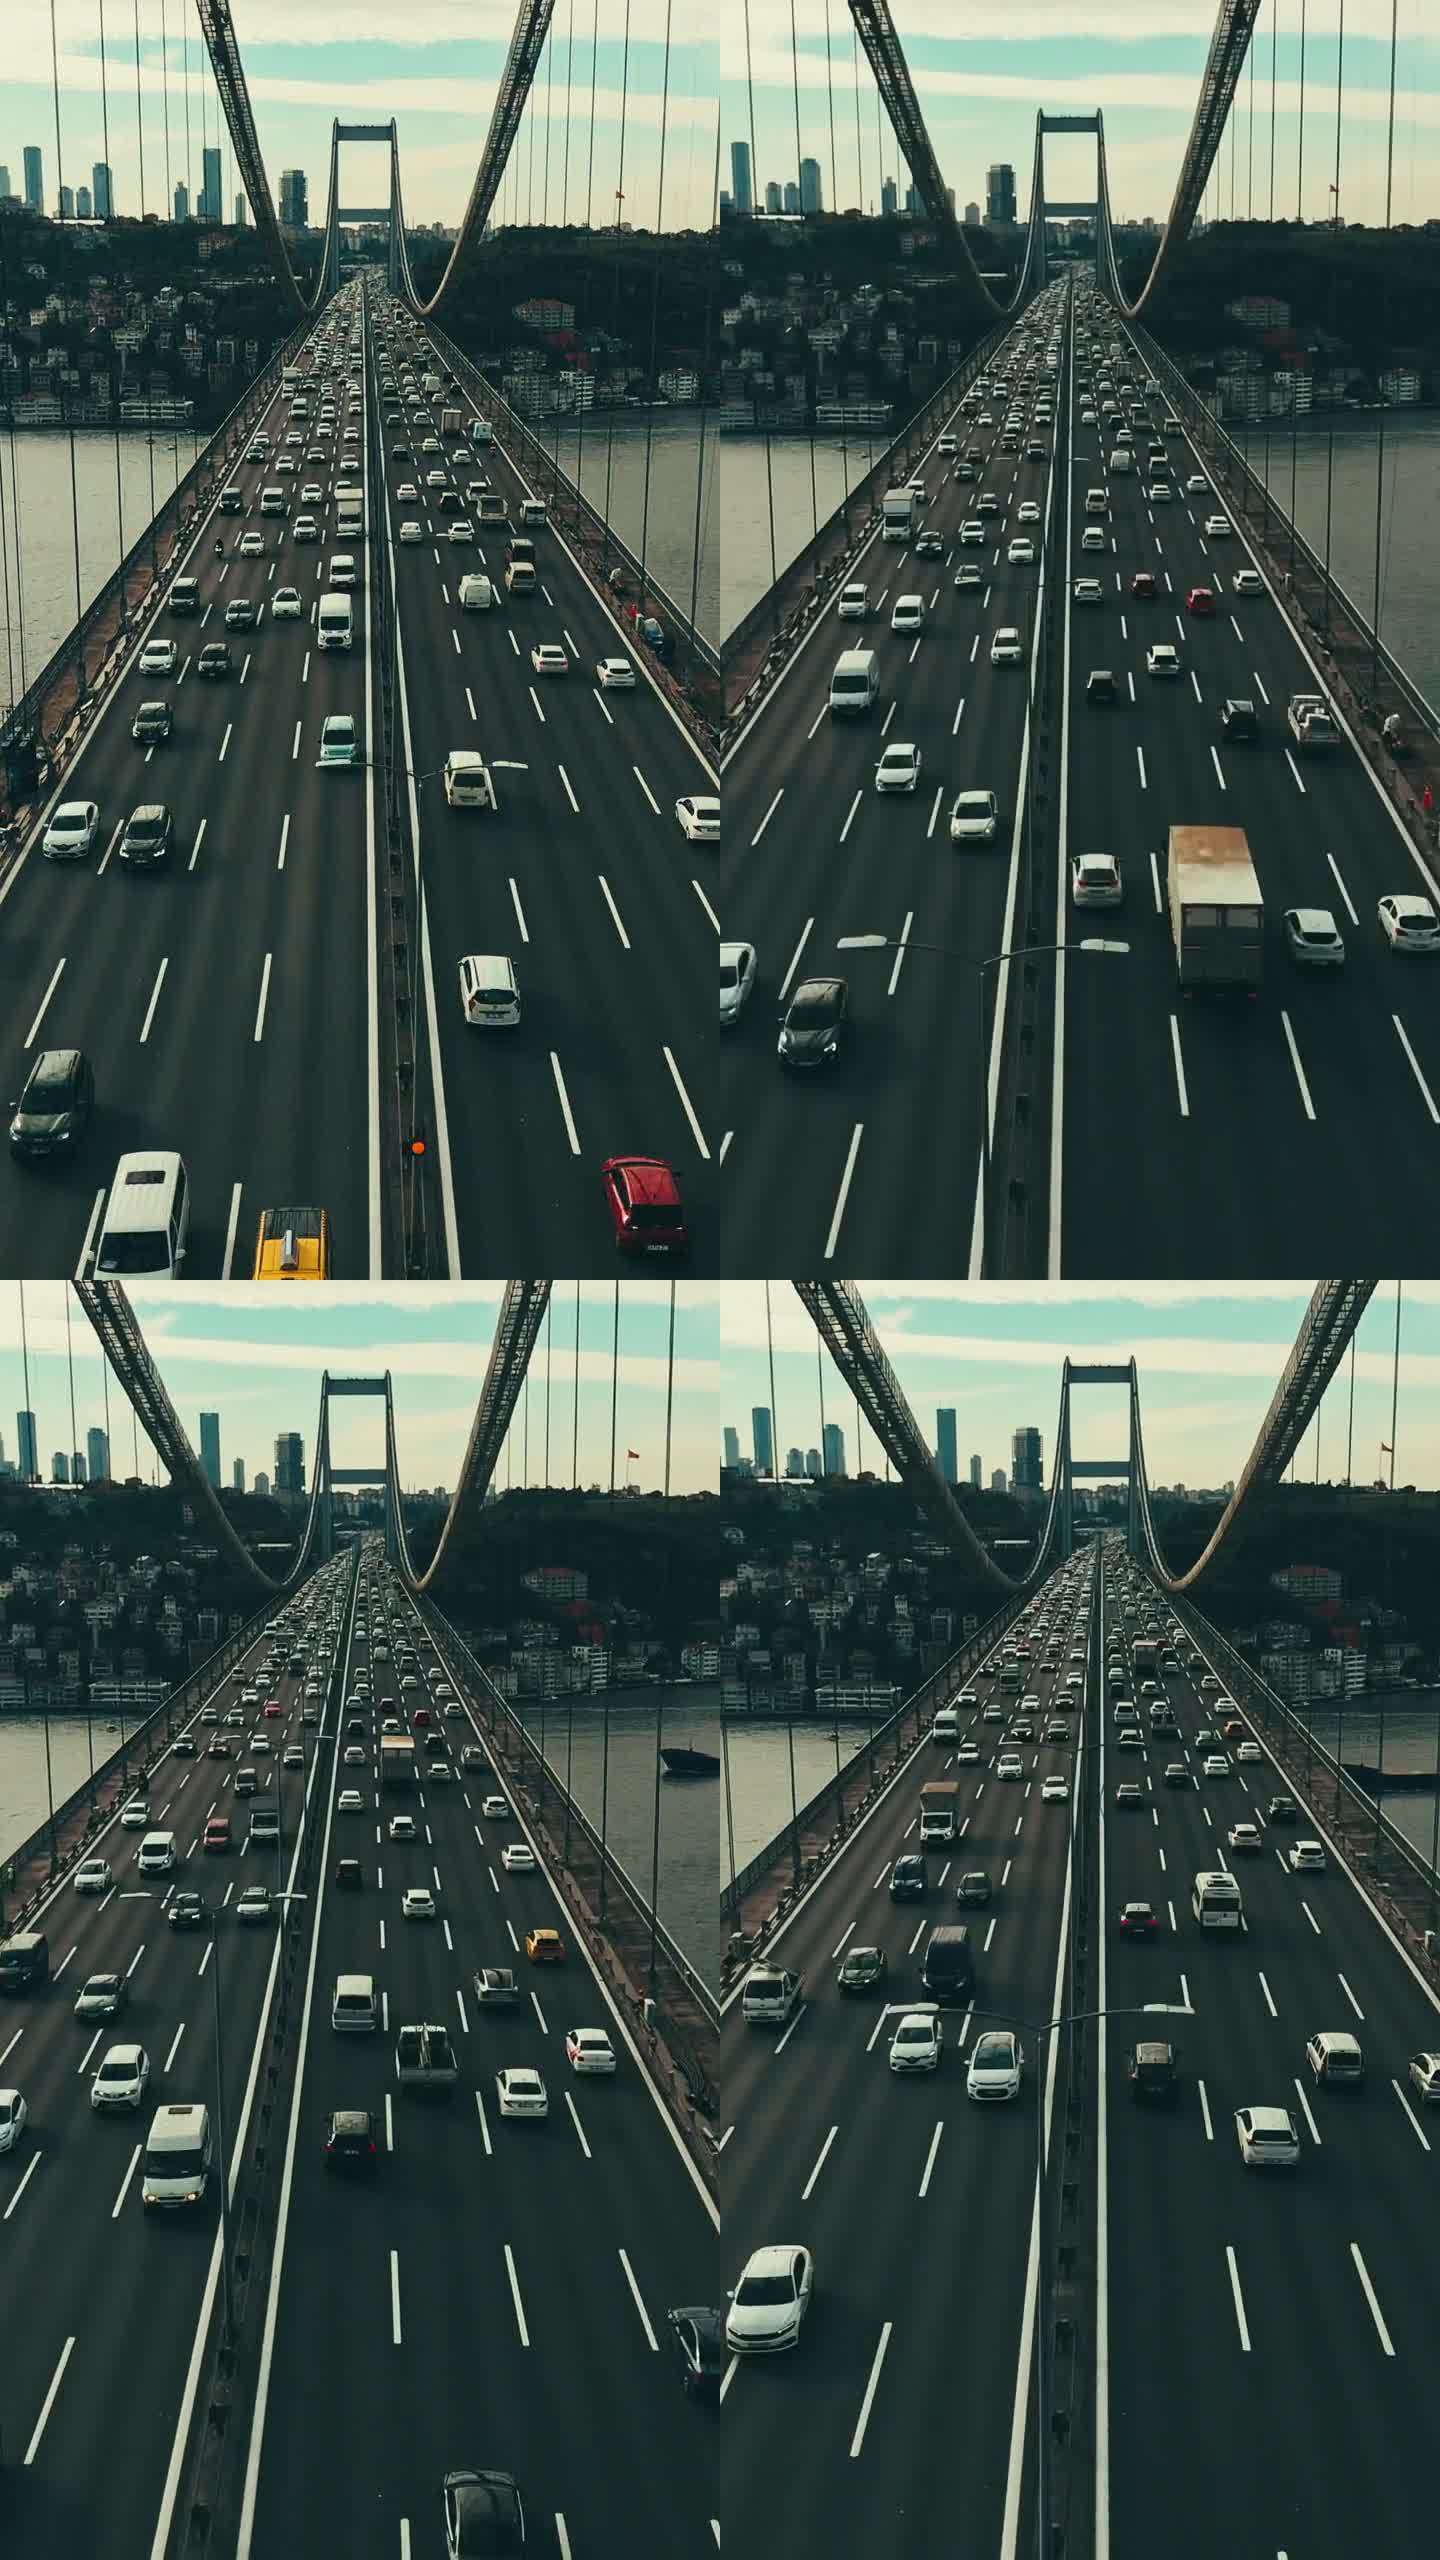 空中高峰交响:博斯普鲁斯大桥上快速移动的交通